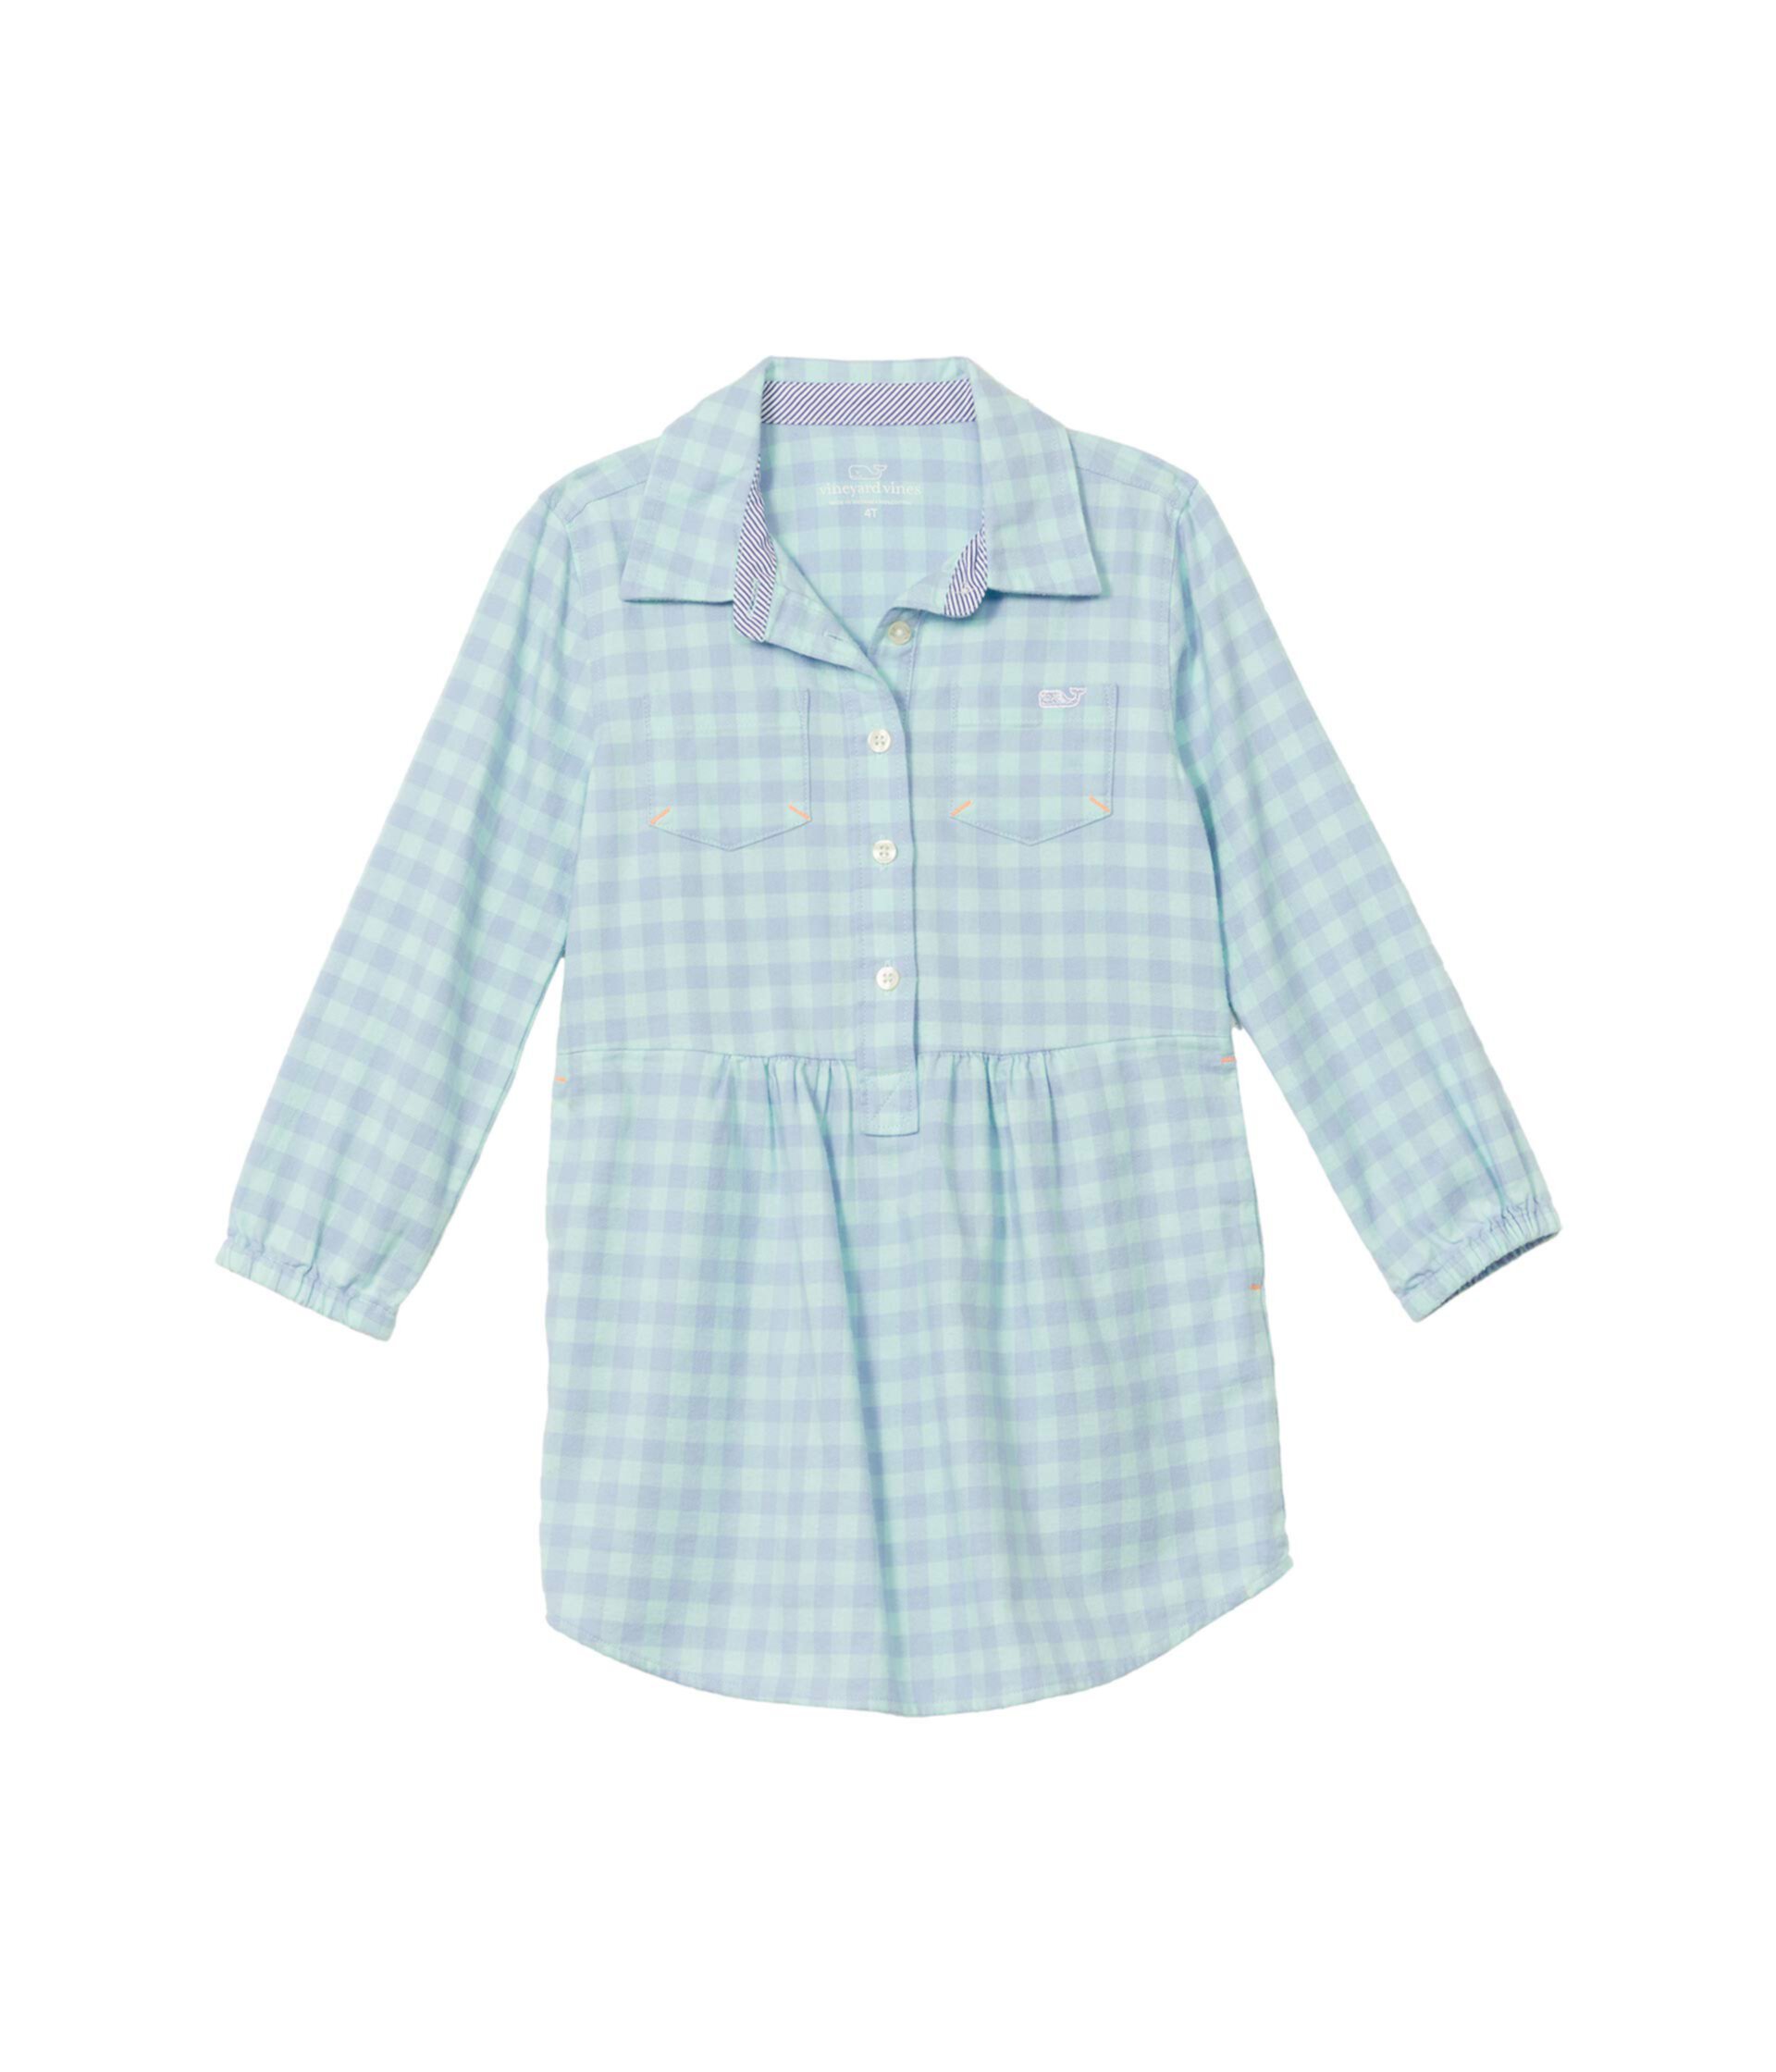 Платье-рубашка в клетку (для малышей / маленьких детей / детей старшего возраста) Vineyard Vines Kids